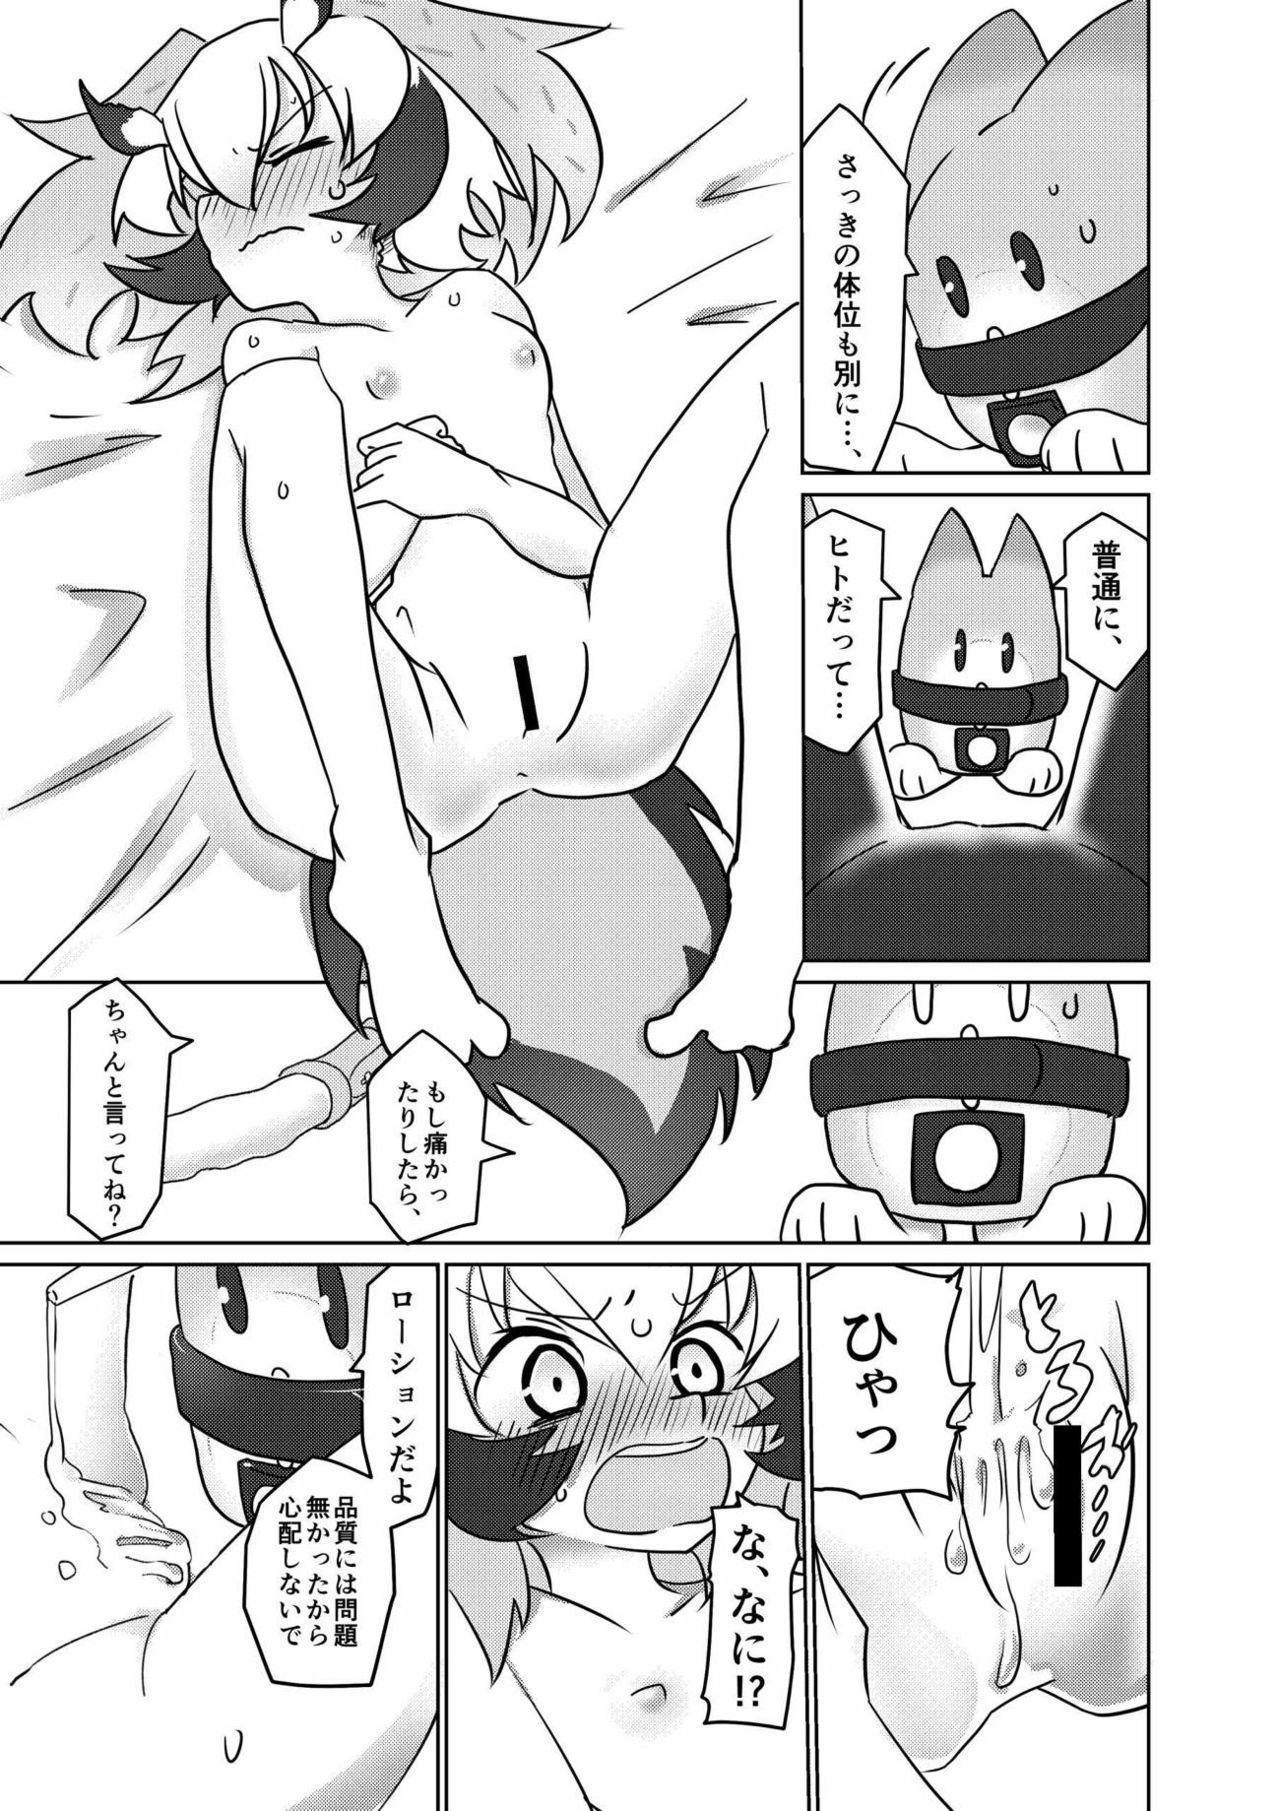 Periscope APPLE WOLF 0004 Kono wa Ecchi - Kemono friends Teenage Sex - Page 8